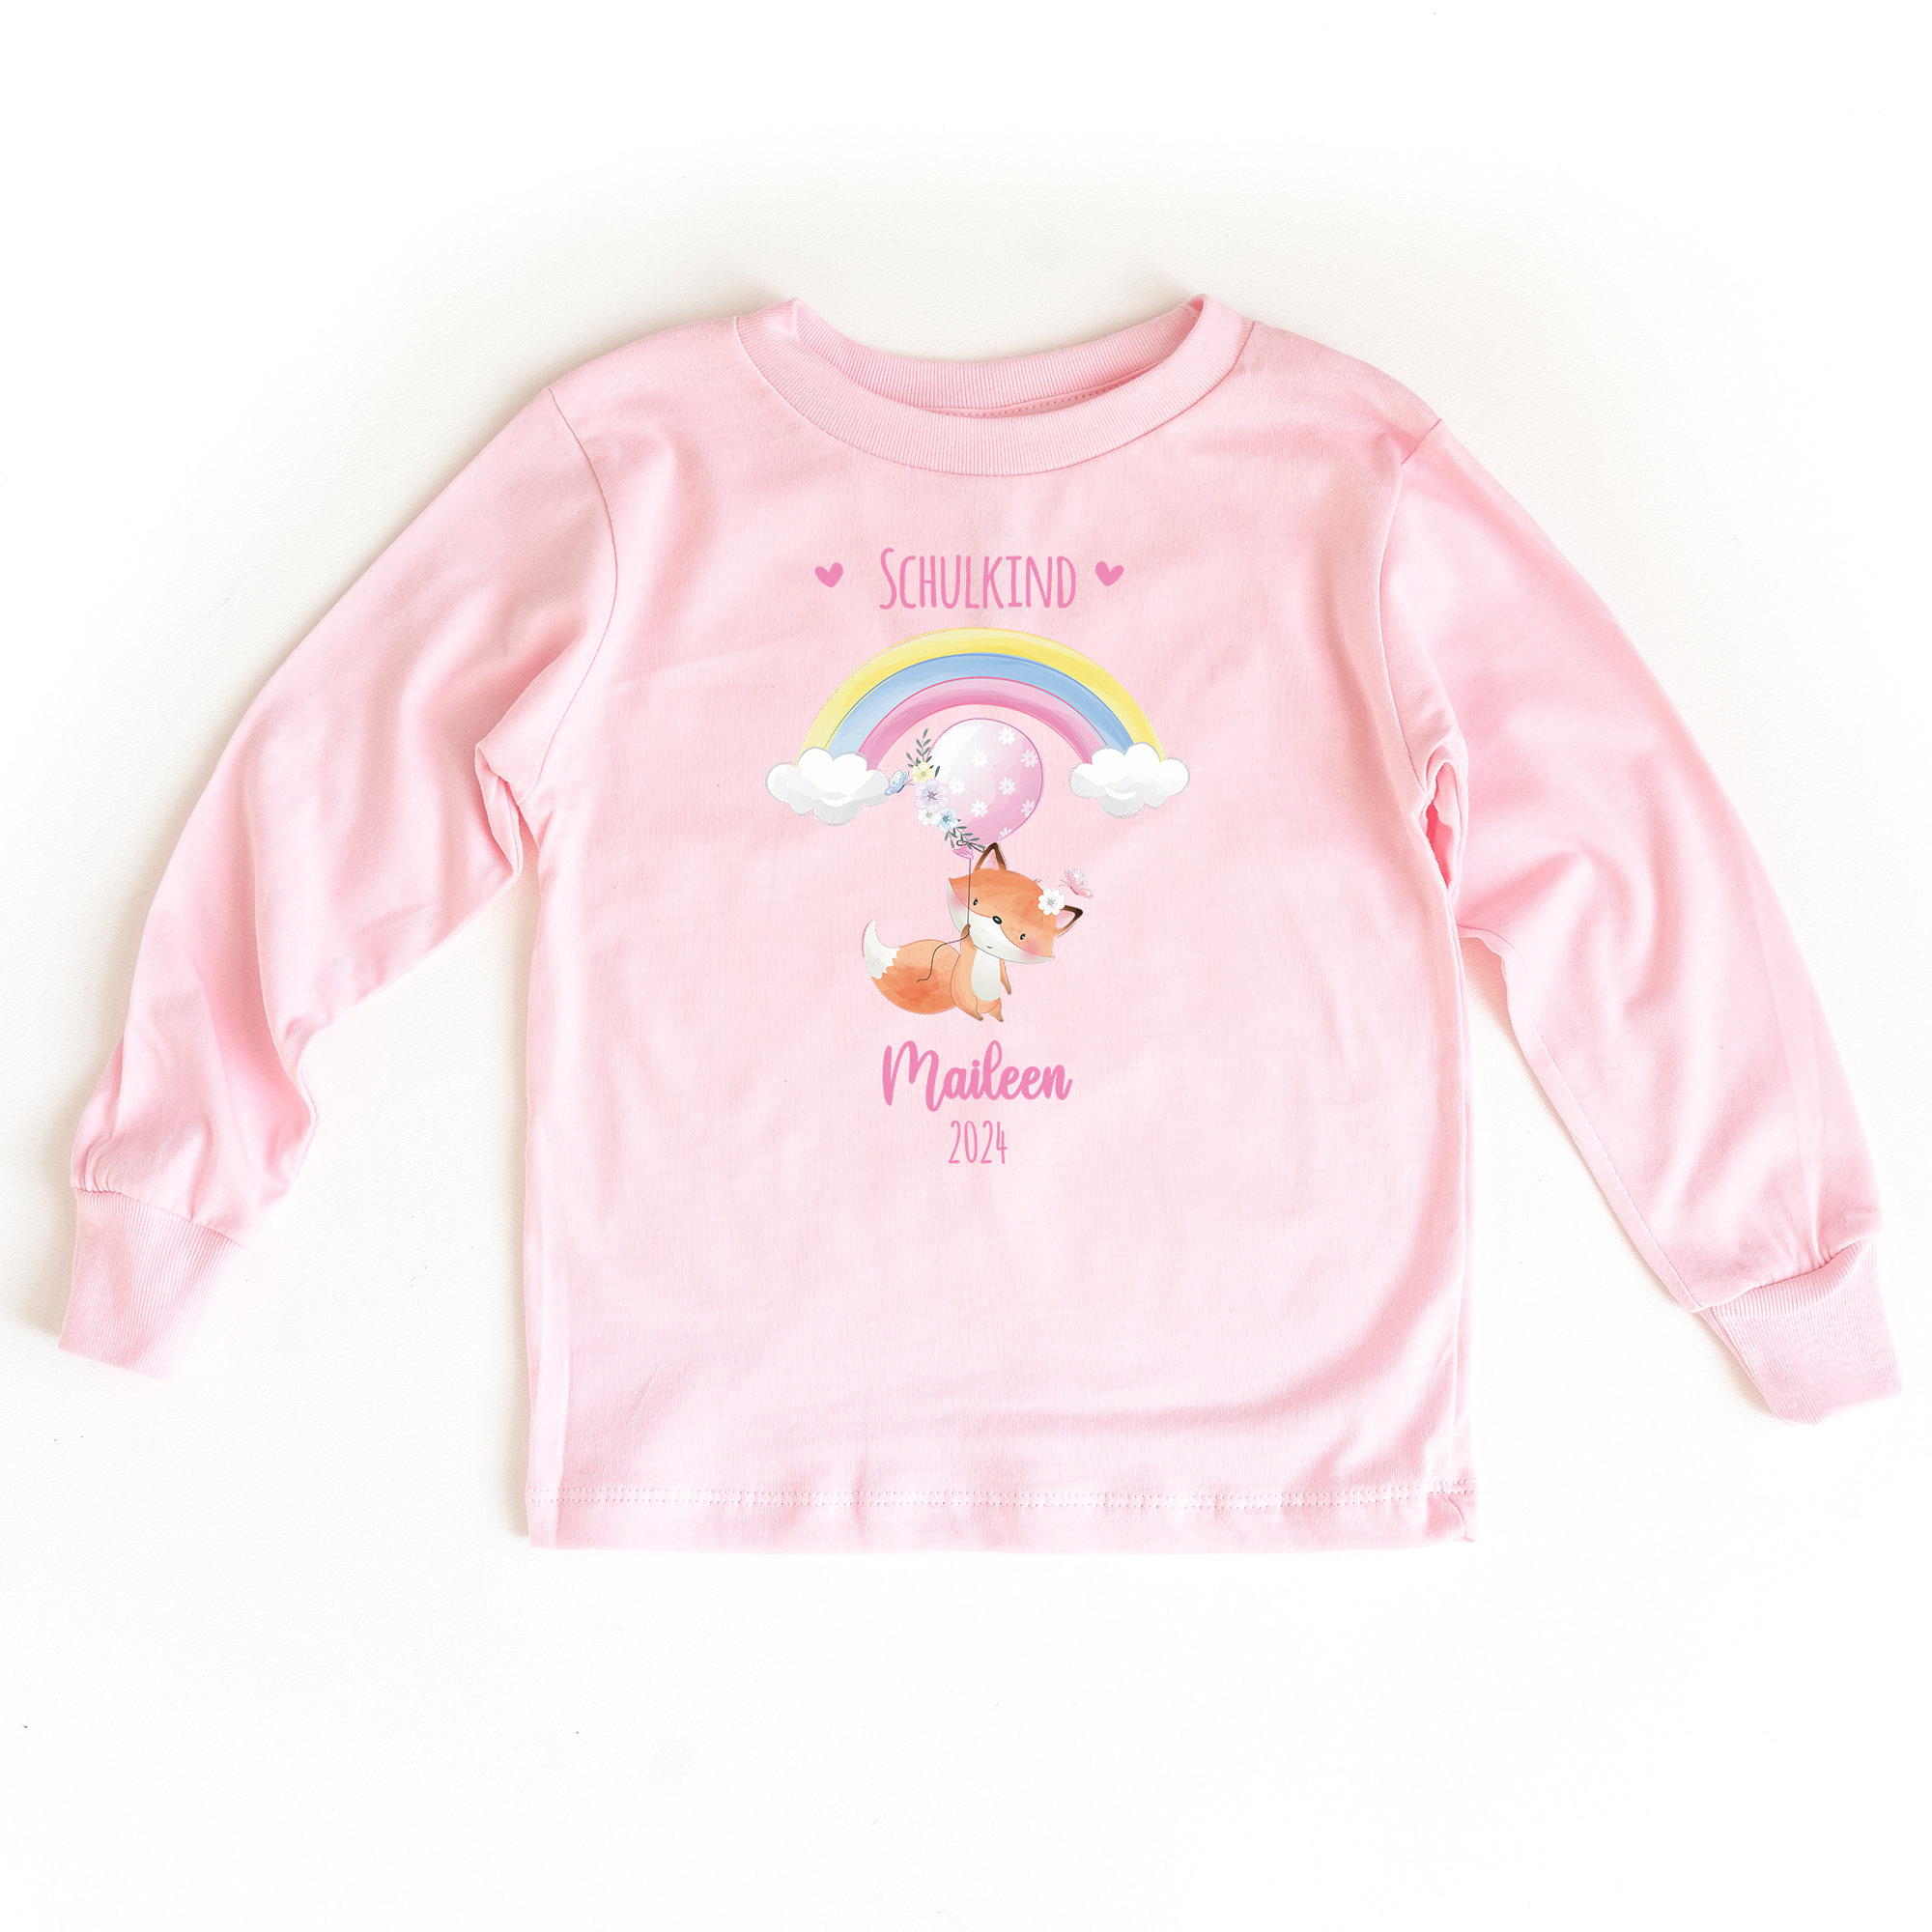 Sweatshirt zum Schulanfang in rosa mit Name und Motiv Fuchs mit Ballon